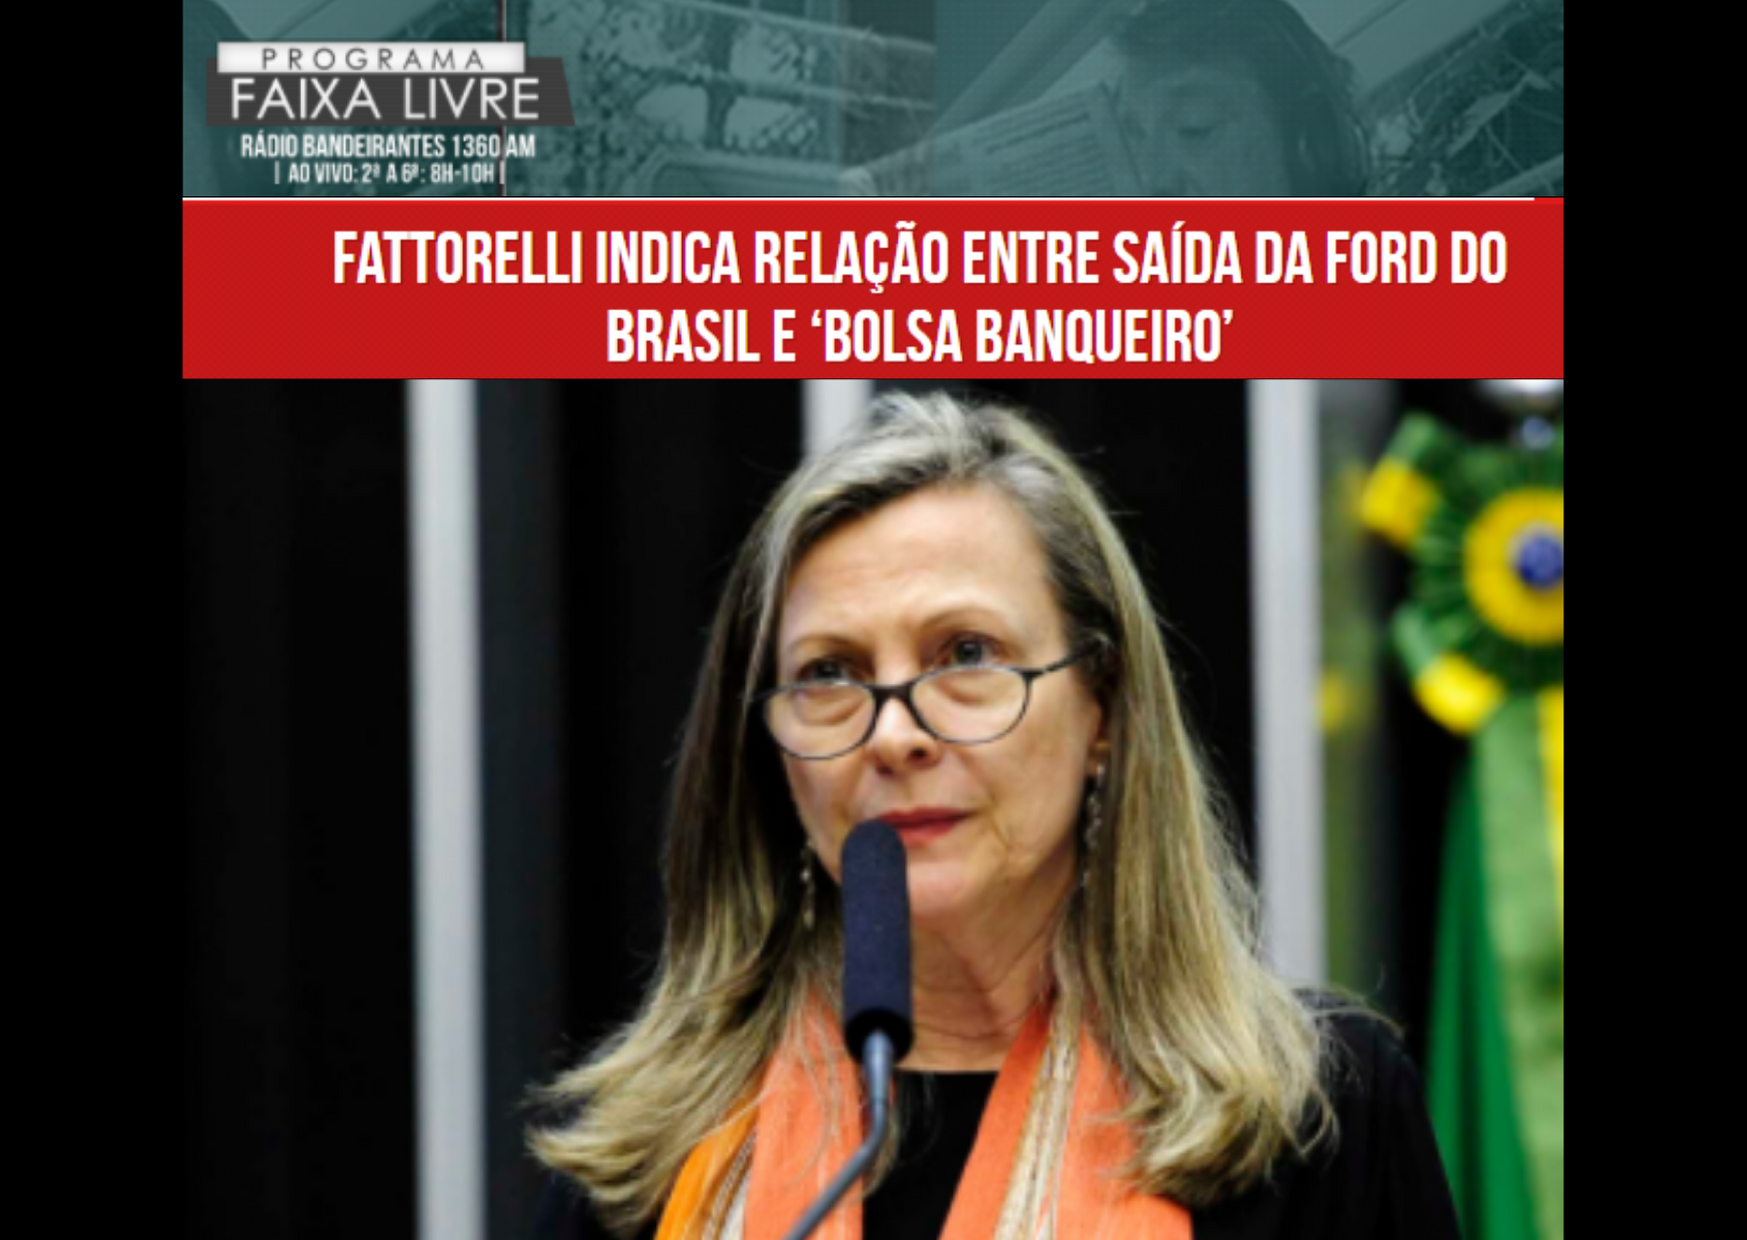 Programa Faixa Livre: Fattorelli indica relação entre saída da Ford do Brasil e ‘bolsa banqueiro’